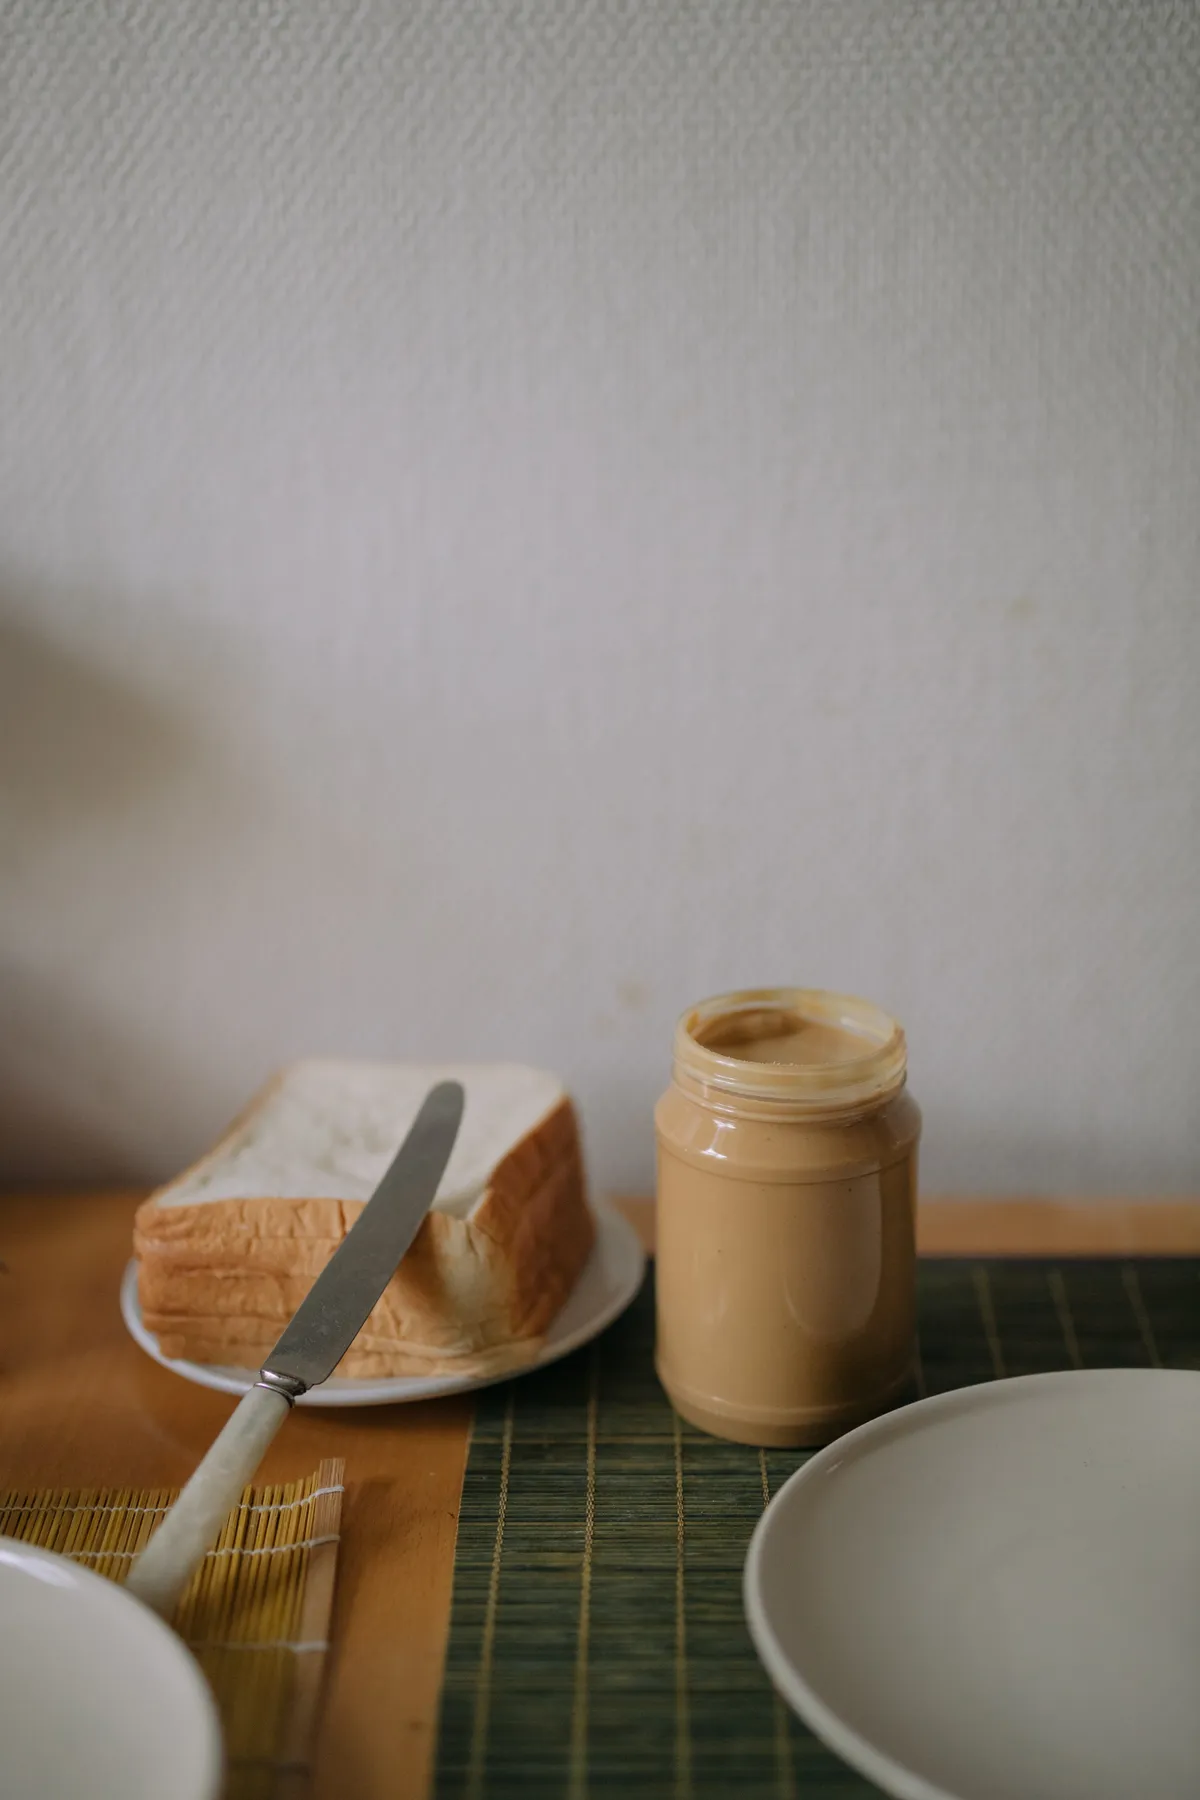 La vision de ce toast au beurre de cacahuète m'a vraiment frappé pour une raison quelconque | Source : Pexels